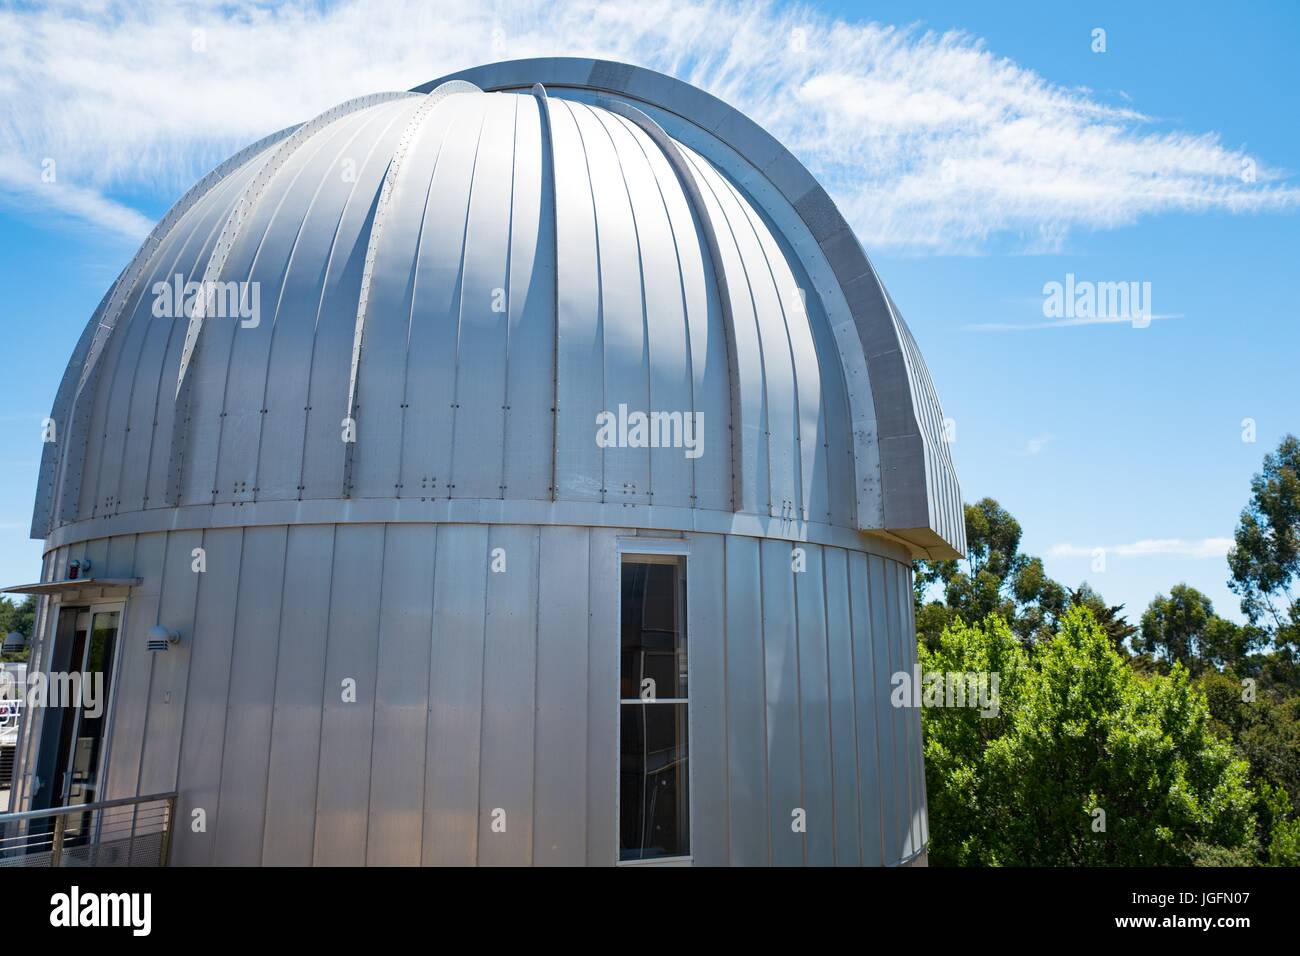 Kuppel der Sternwarte an einem sonnigen Tag die Chabot Space Science Center, ein Wissenschaftsmuseum und Observatorium in Oakland, Kalifornien, 15. Juni 2017. Stockfoto